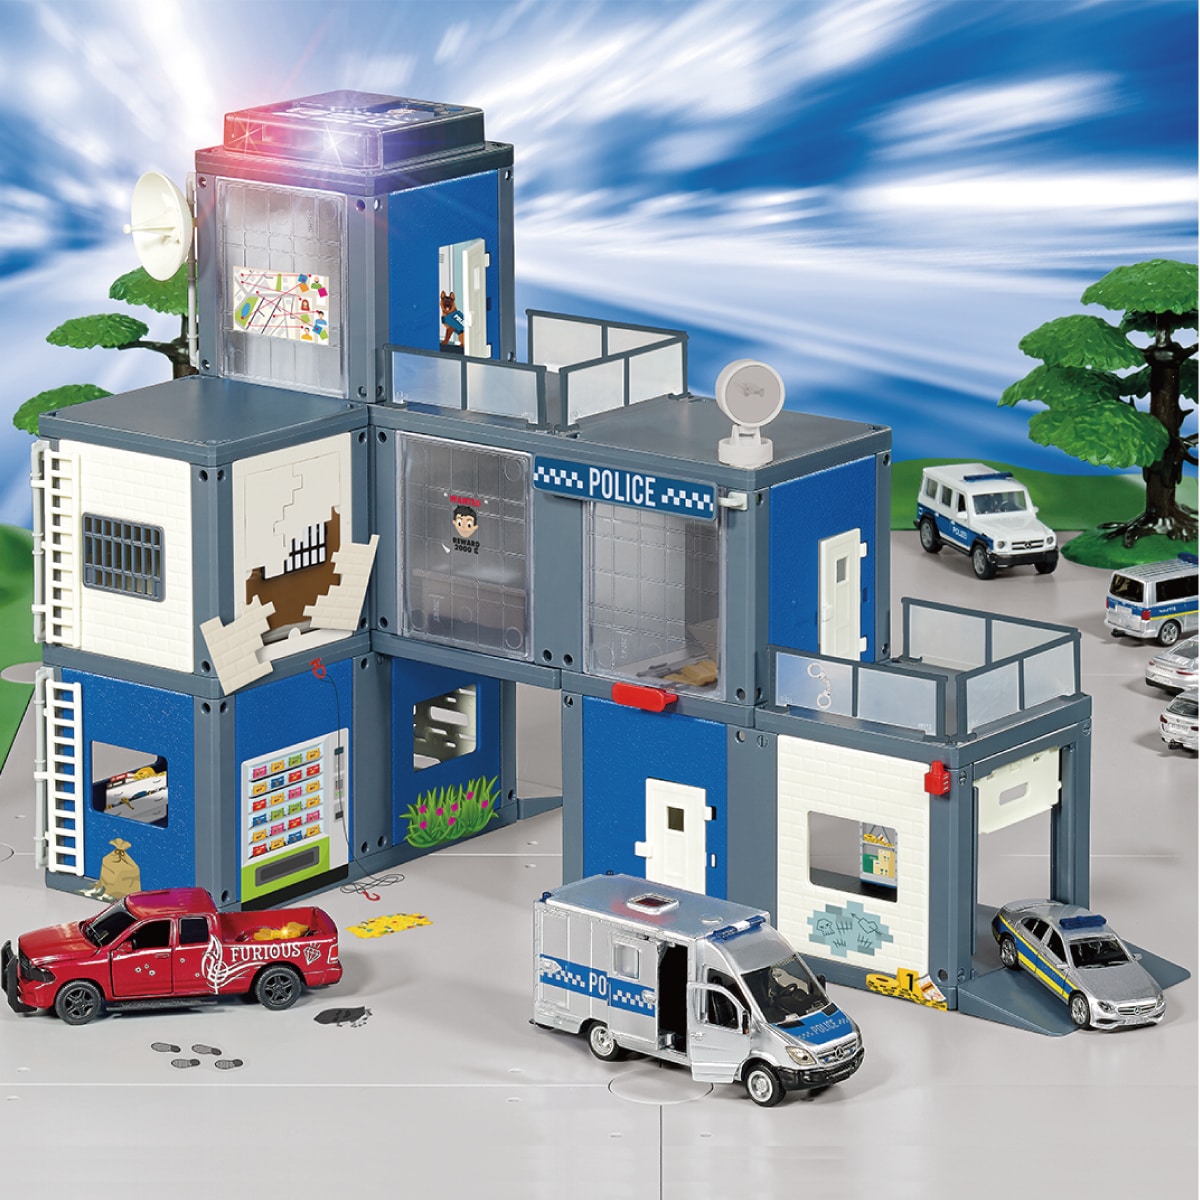 SIKU WORLD 警察署: ボーネルンド オンラインショップ。世界中の知育玩具など、あそび道具がたくさん。0歳からのお子様へのプレゼントにも。